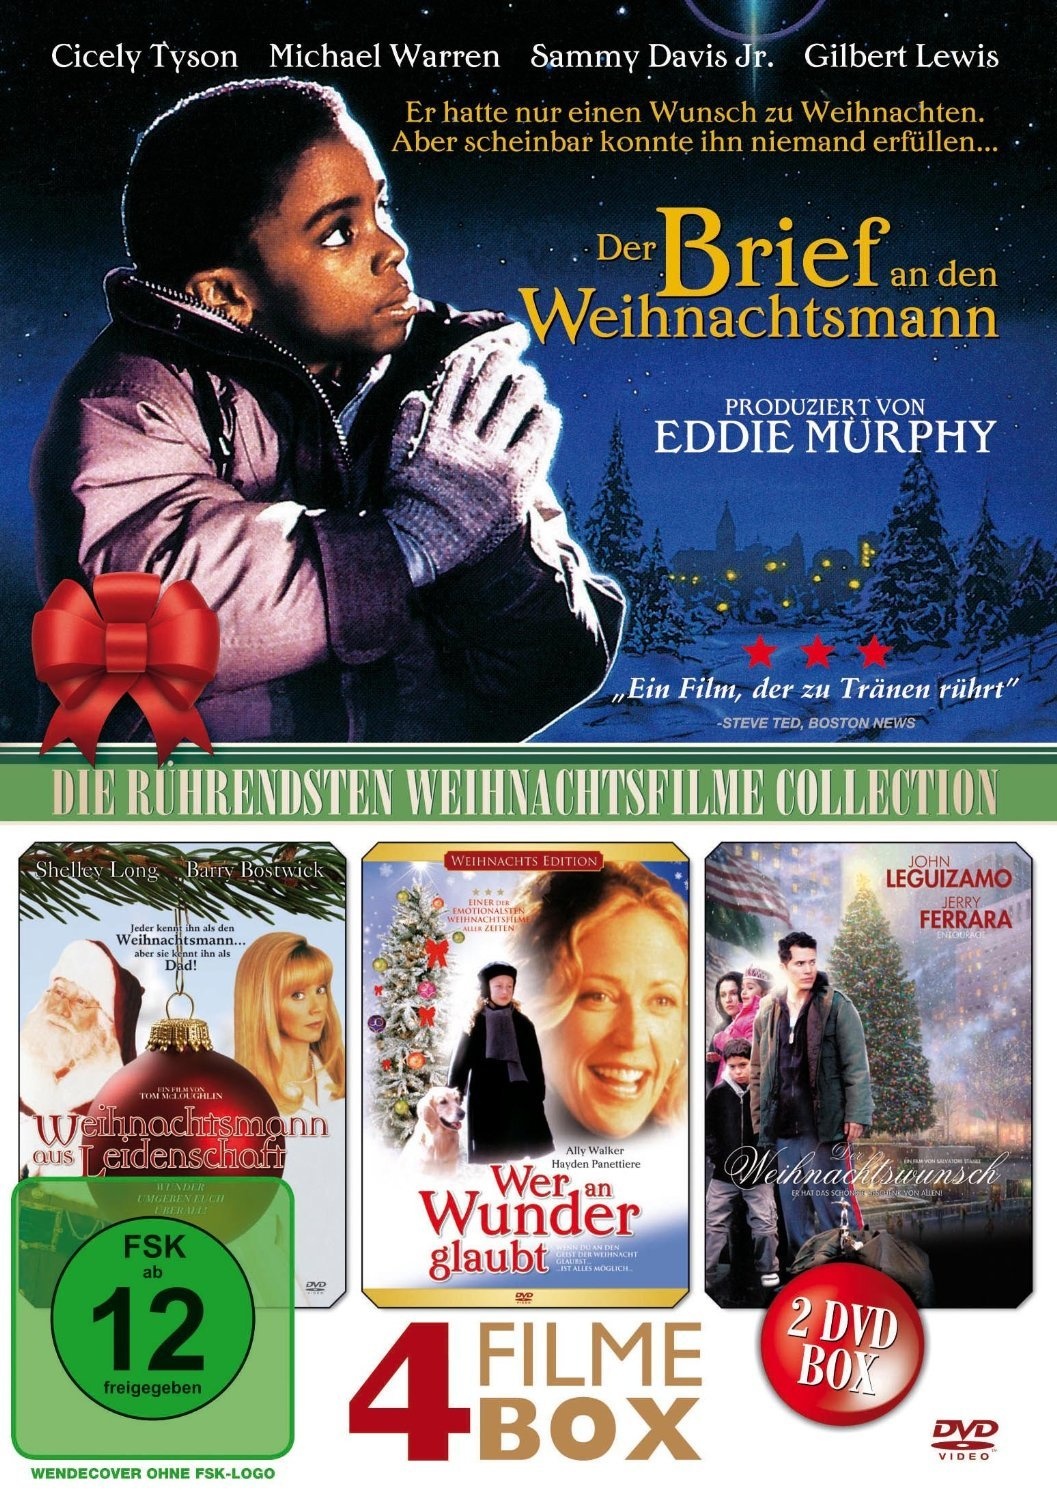 Die Rührendsten Weihnachtsfilme - Collection (DVD)